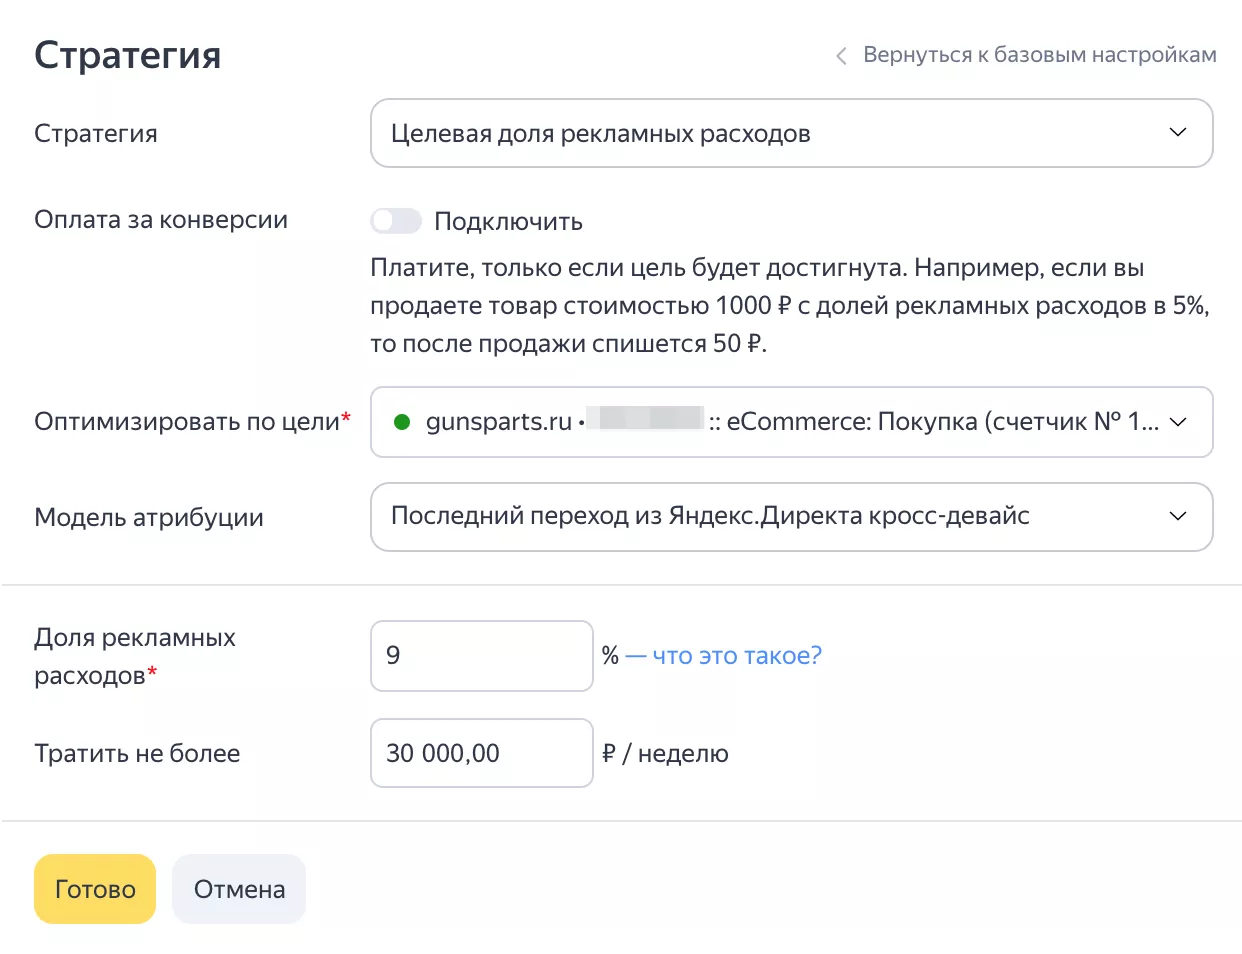 Параметры автоматической стратегии Яндекс Директ